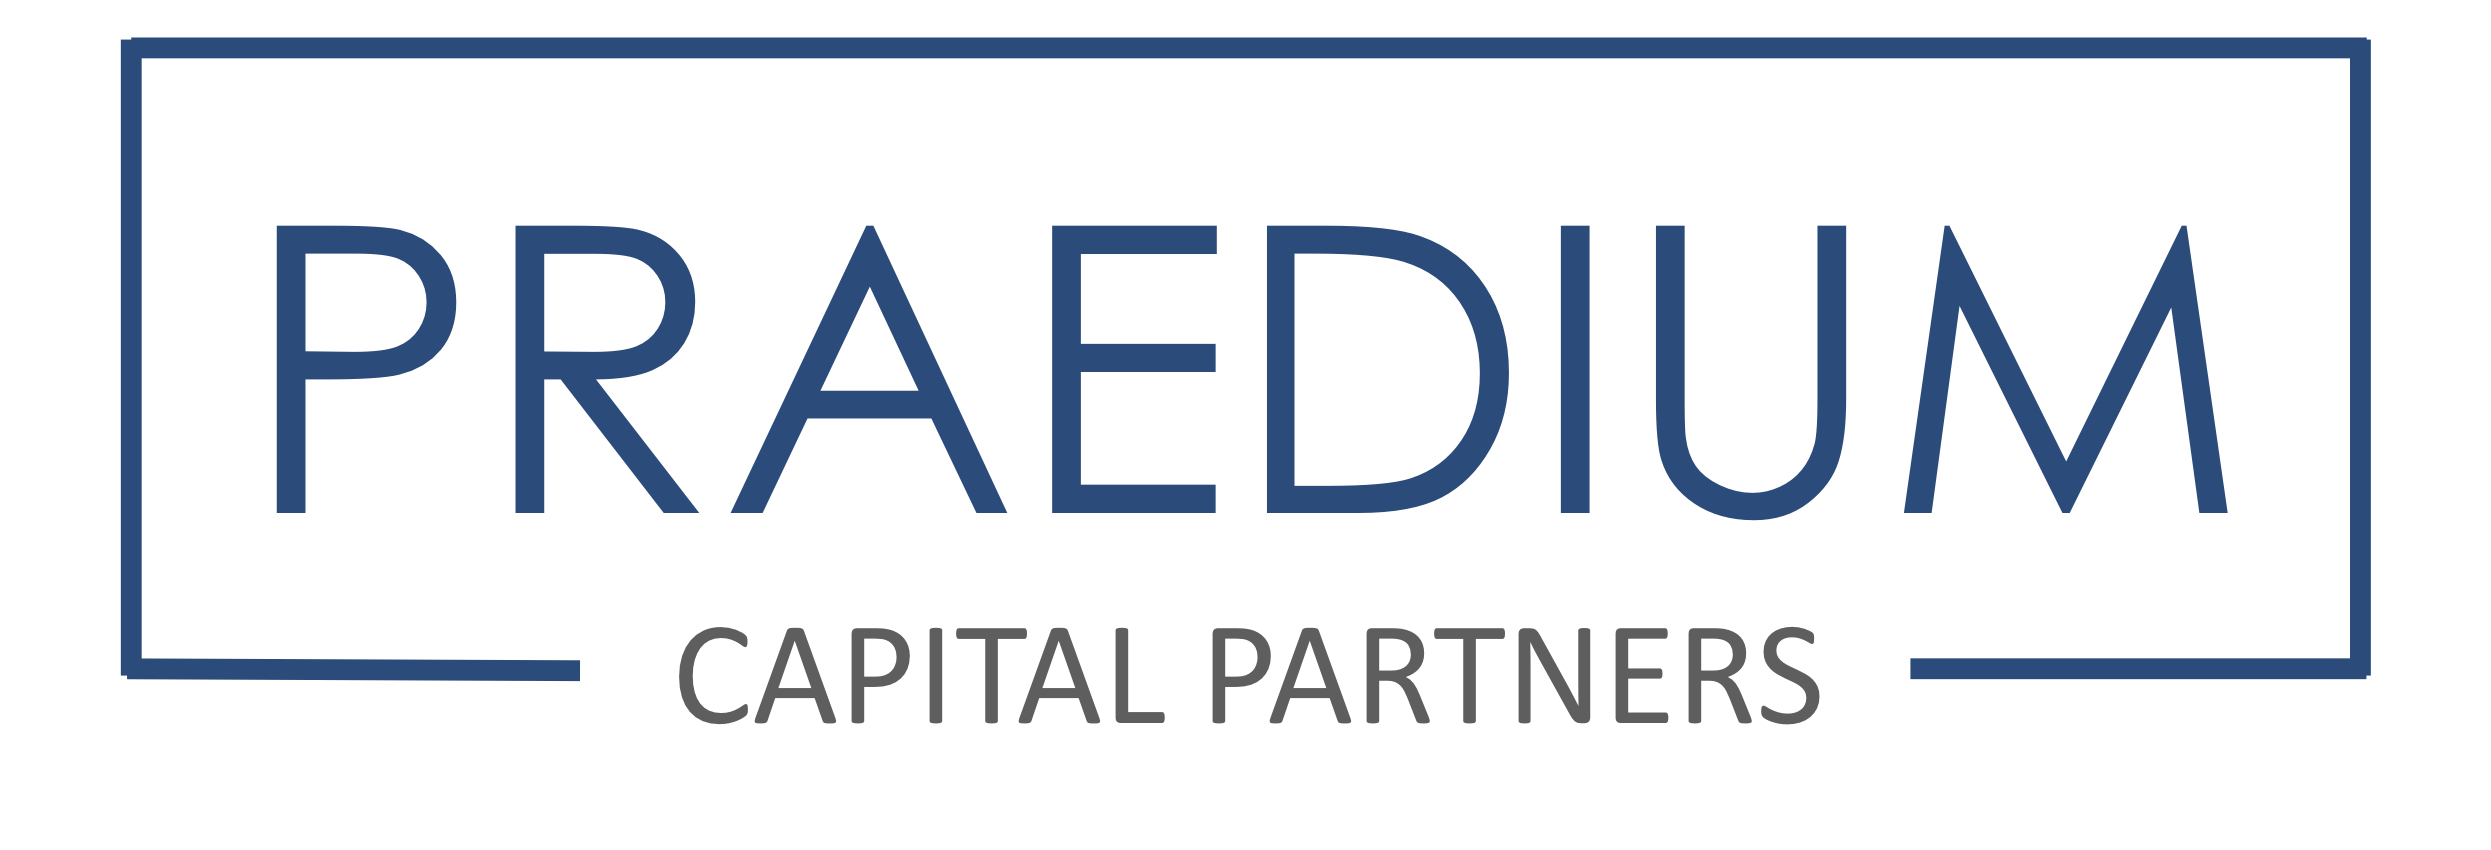 Praedium Capital Partners